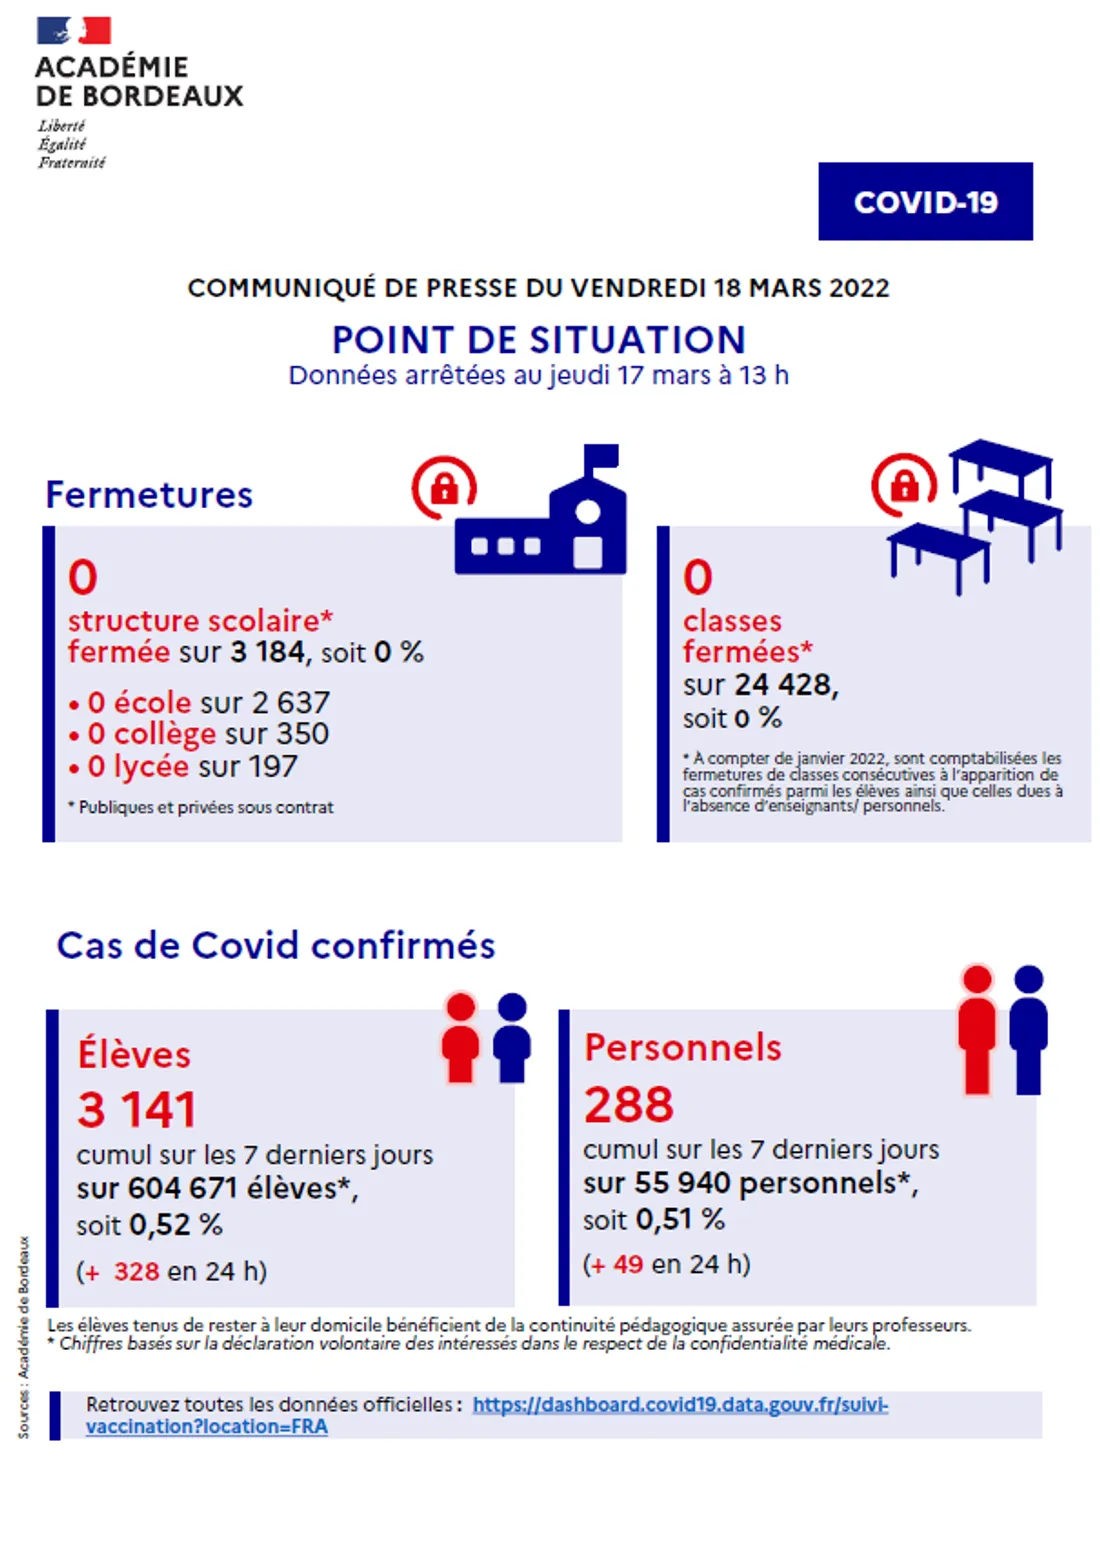 Communiqué - Point de situation Covid-19 dans l'académie de Bordeaux du 18/03/22